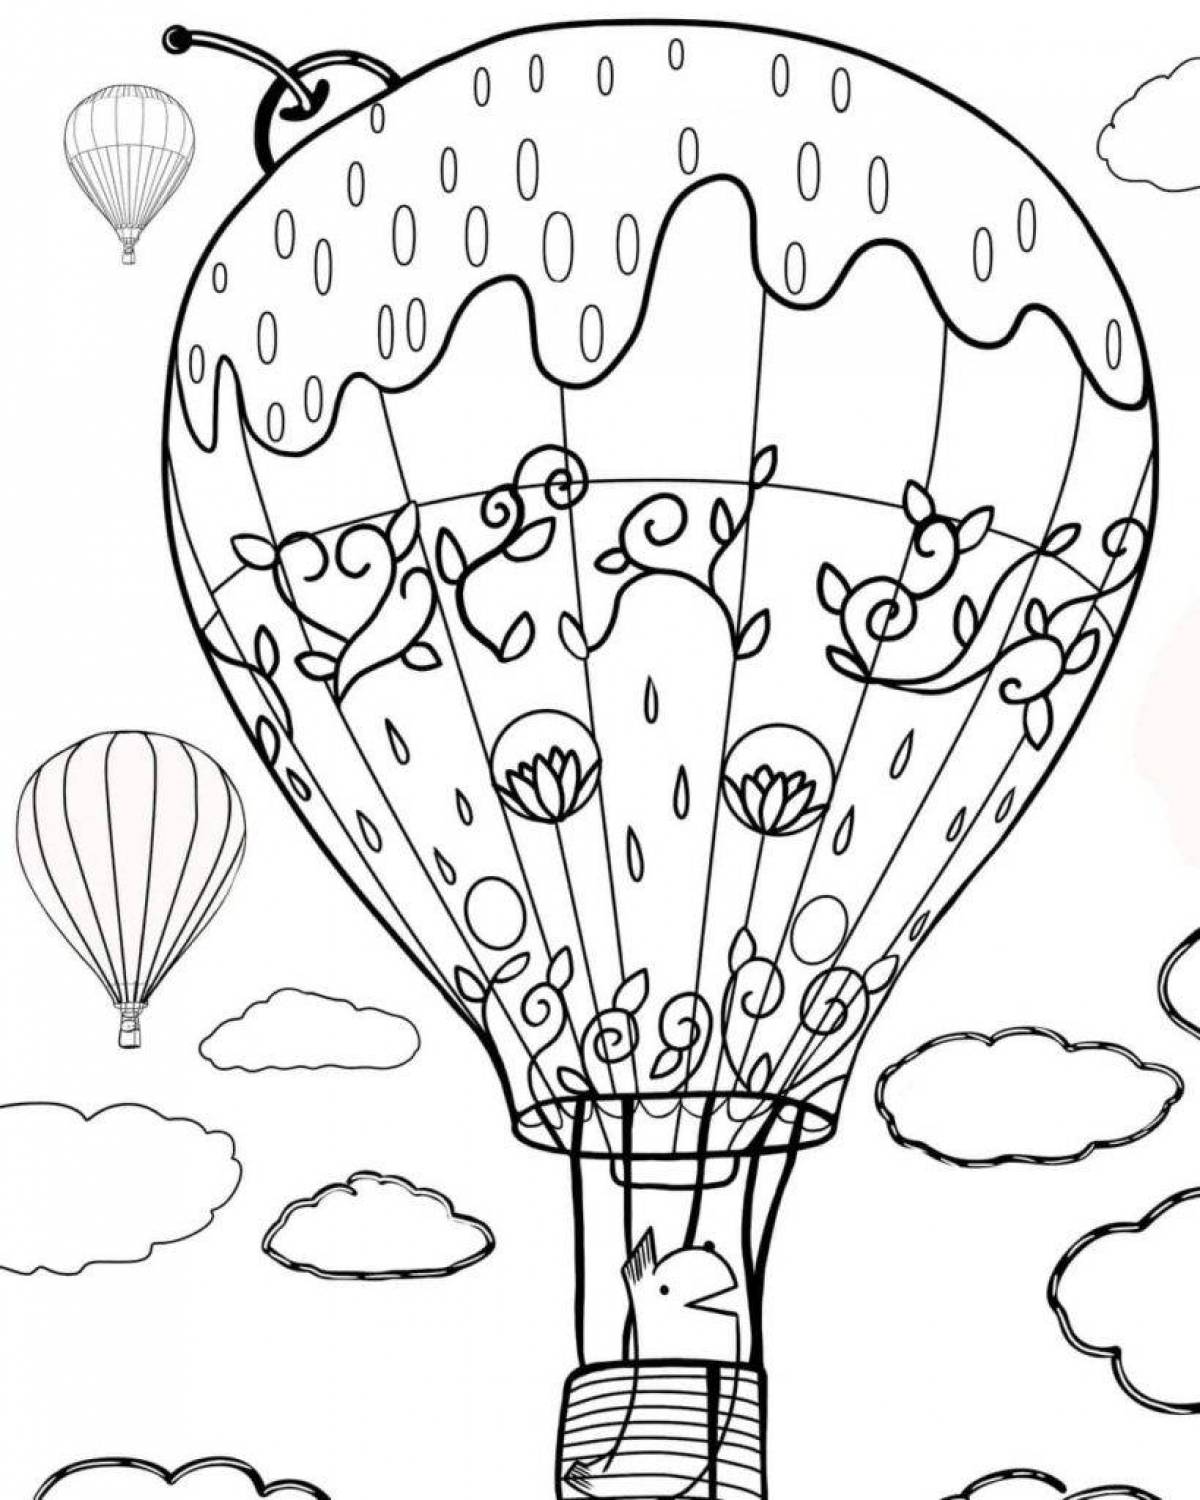 Balloon #3